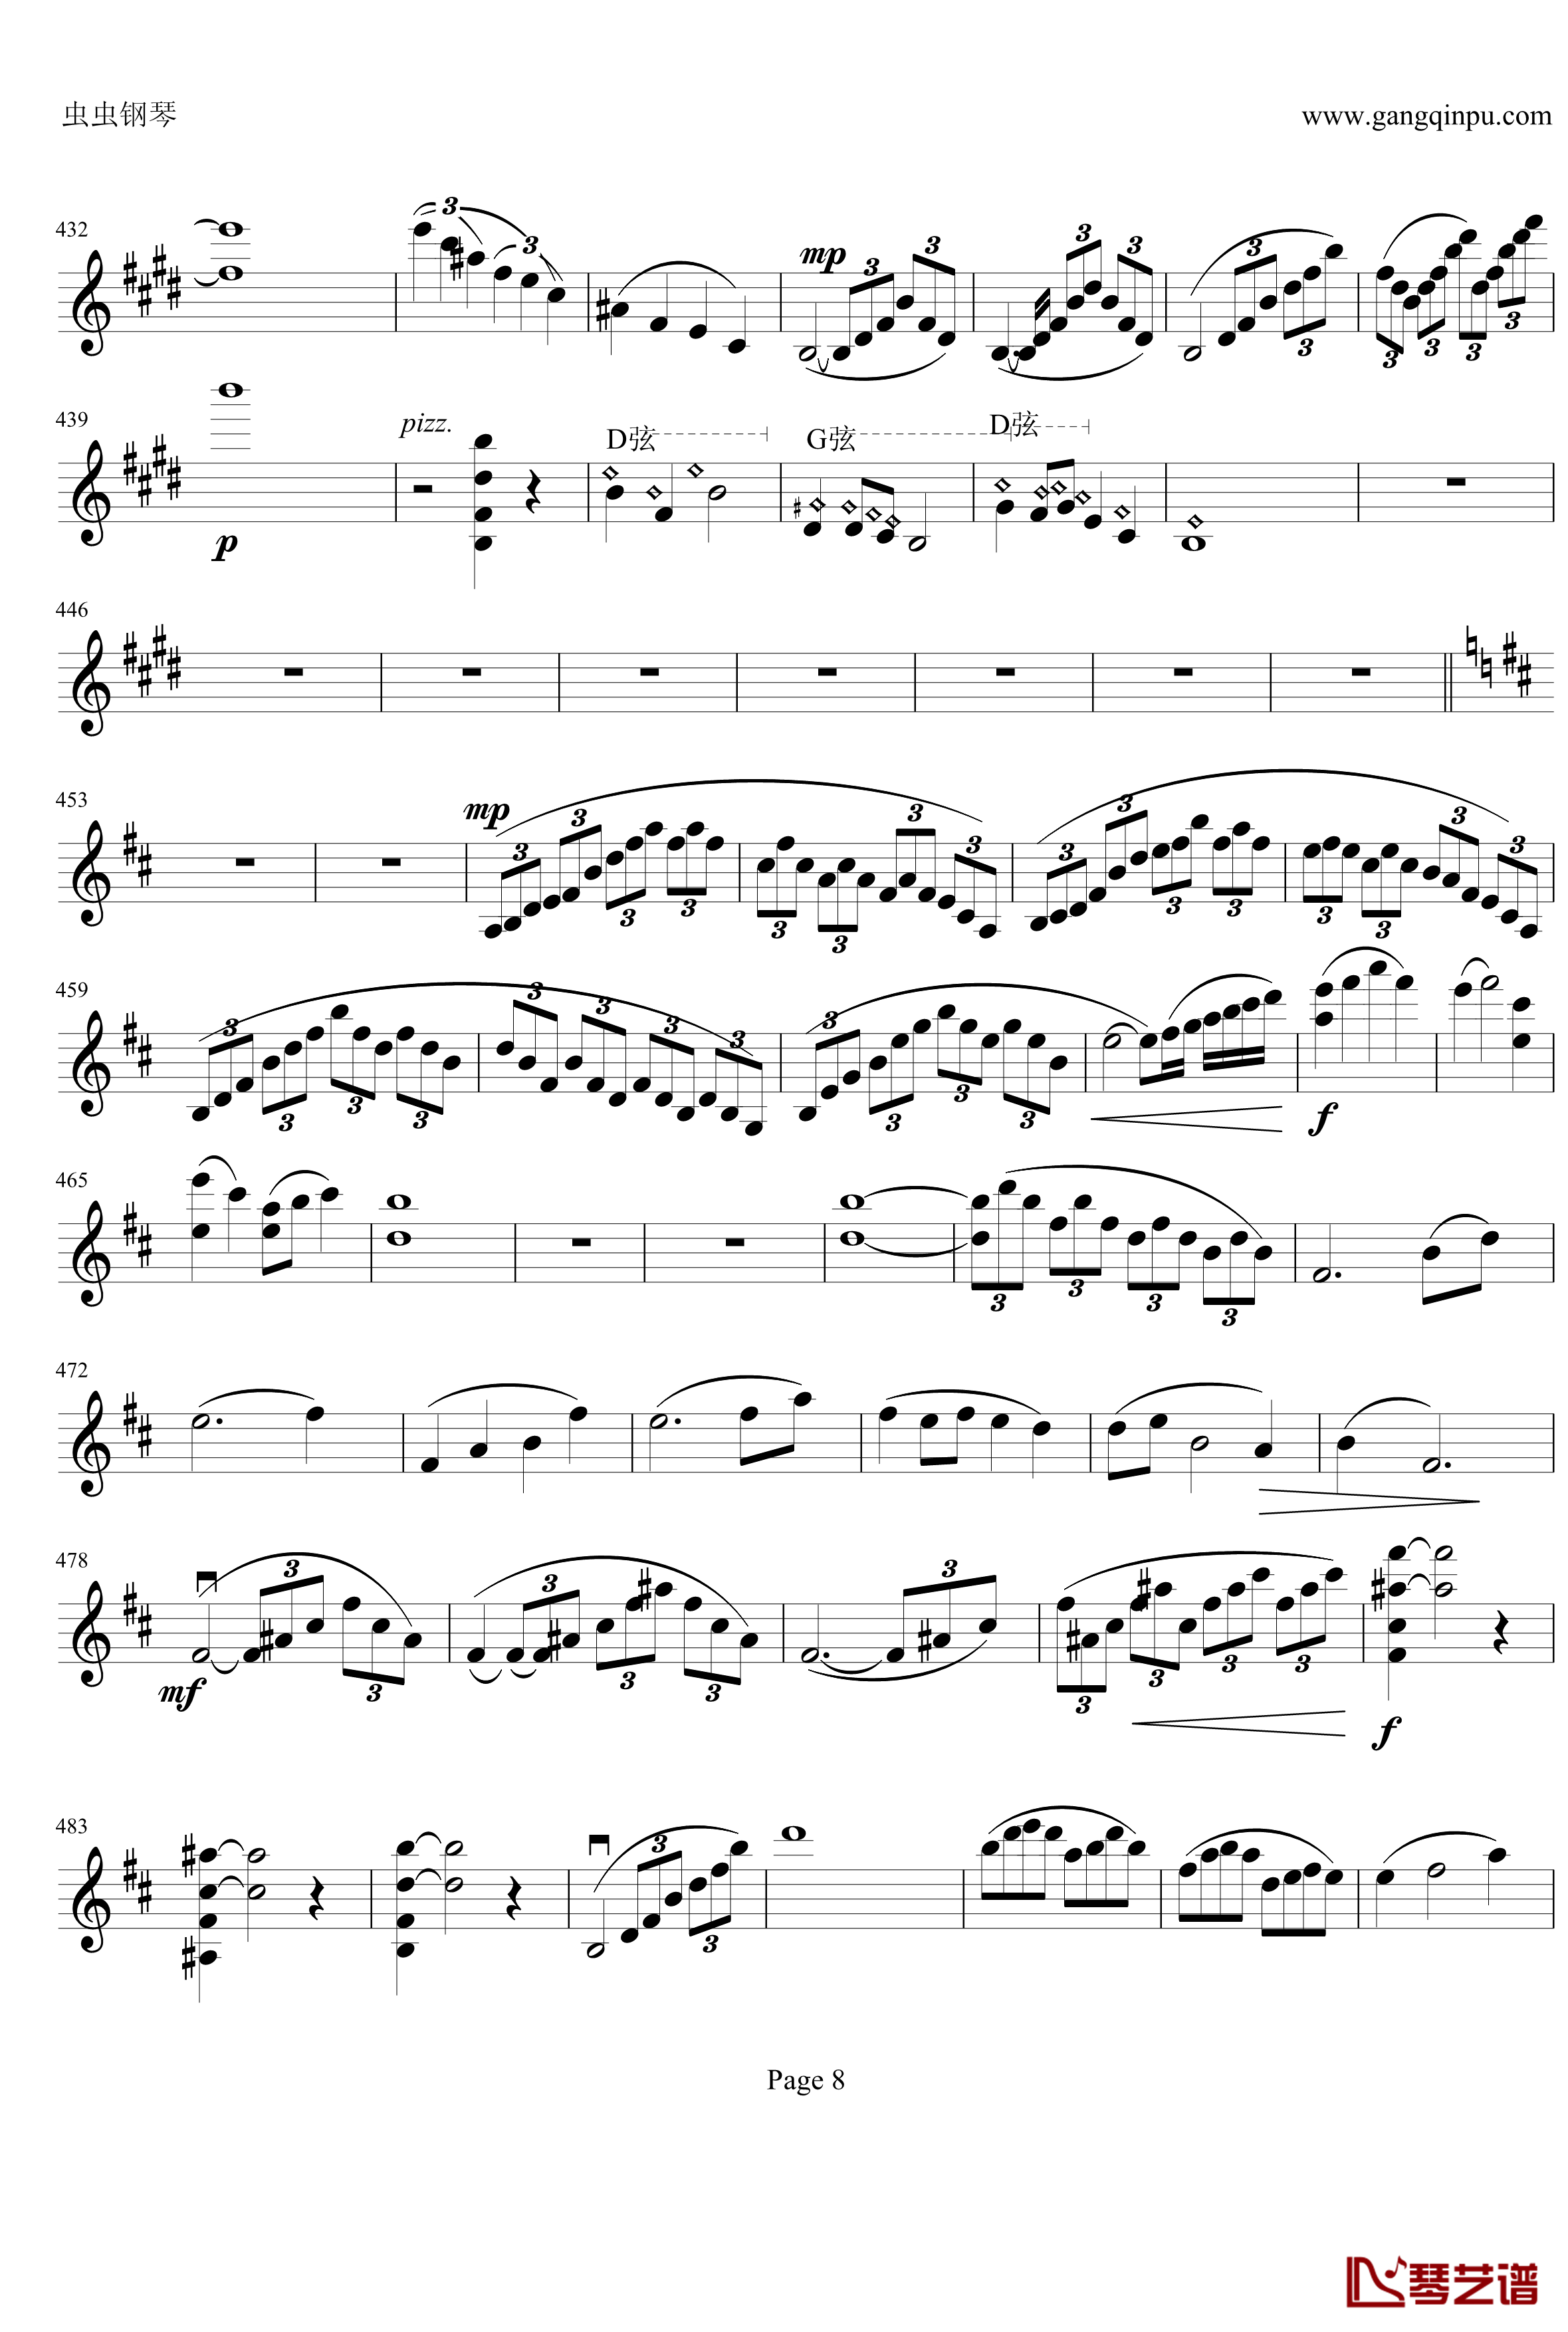 云南风情钢琴谱-第一乐章-b小调小提琴协奏曲-项道荣8